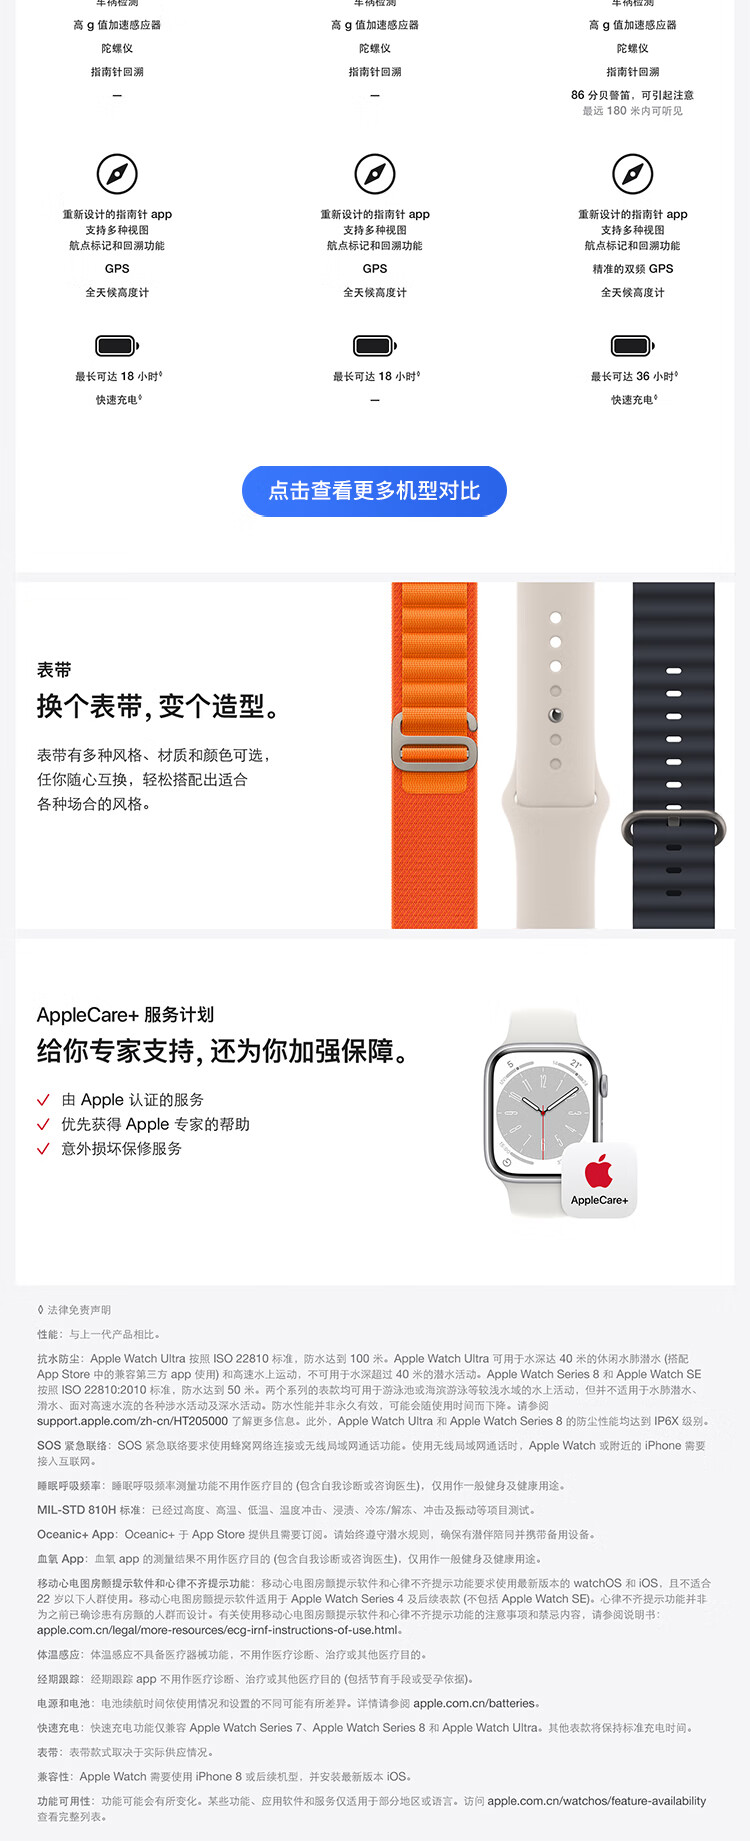 Apple Watch SE 2022款智能手表GPS款40毫米午夜色铝金属表壳午夜色运动型表带 MNJT3CH/A